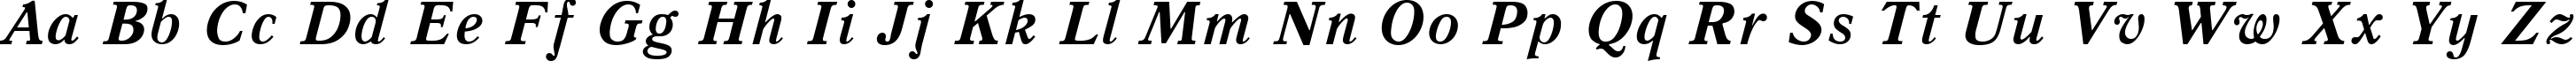 Пример написания английского алфавита шрифтом Quant Antiqua Bold Italic:001.001